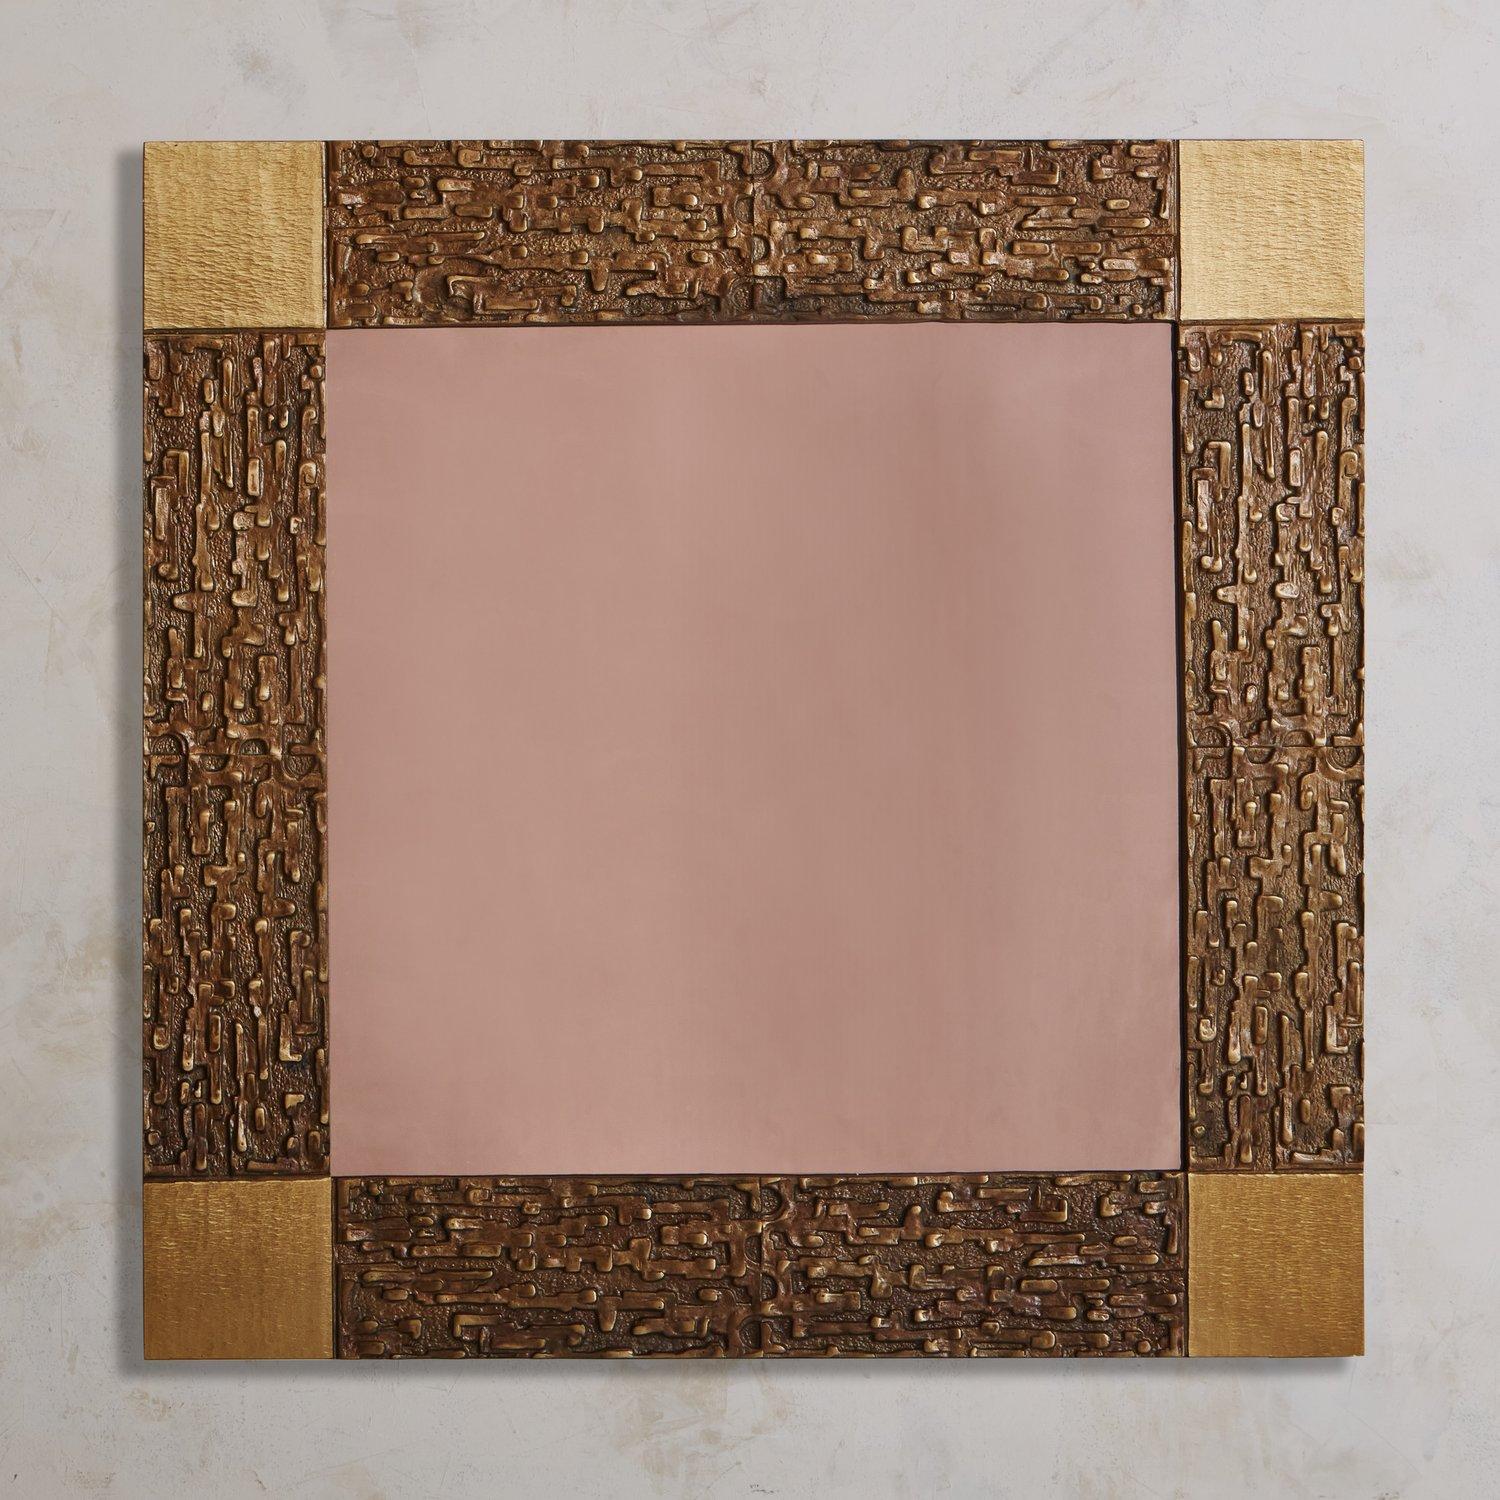 Un miroir mural brutaliste teinté en rose attribué à Luciano Frigerio. Ce miroir présente un cadre carré en laiton moulé patiné avec une finition texturée captivante et des détails de coins carrés. Source : France, années 1970.

Luciano Frigerio